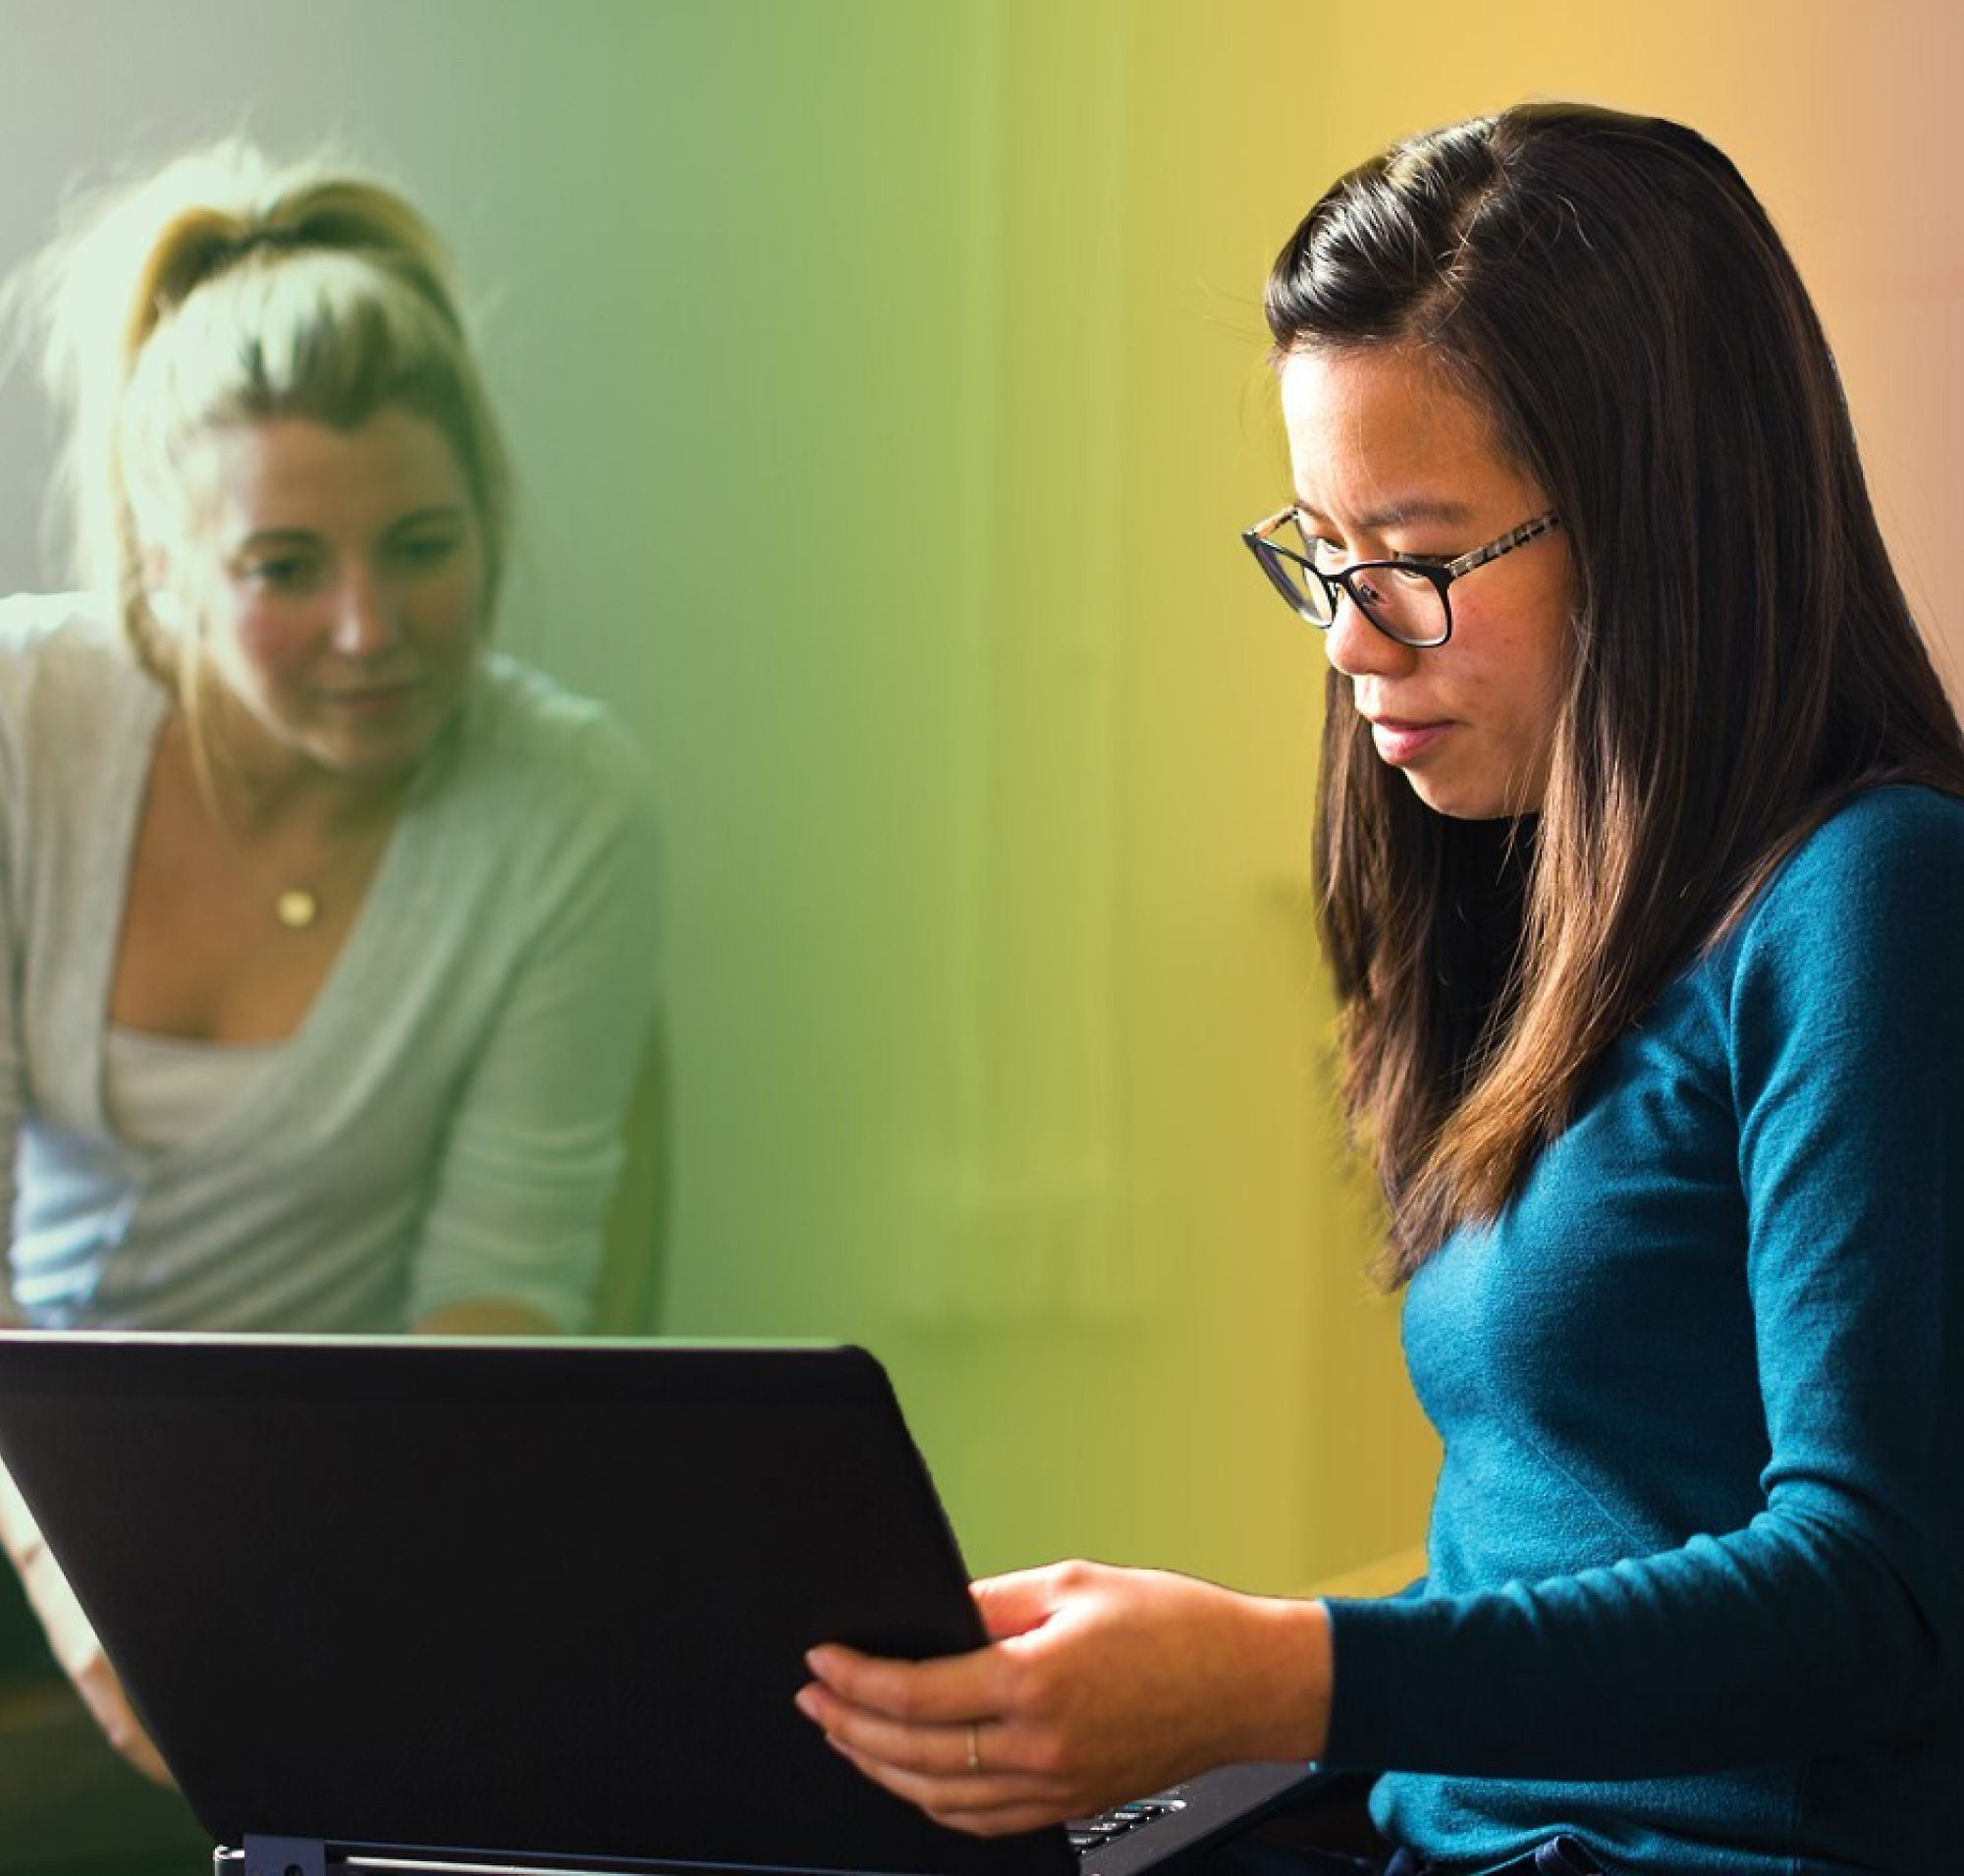 Duas mulheres, uma de cabelo louro e outra de óculos, a trabalharem juntas num computador portátil numa sala iluminada a cores.